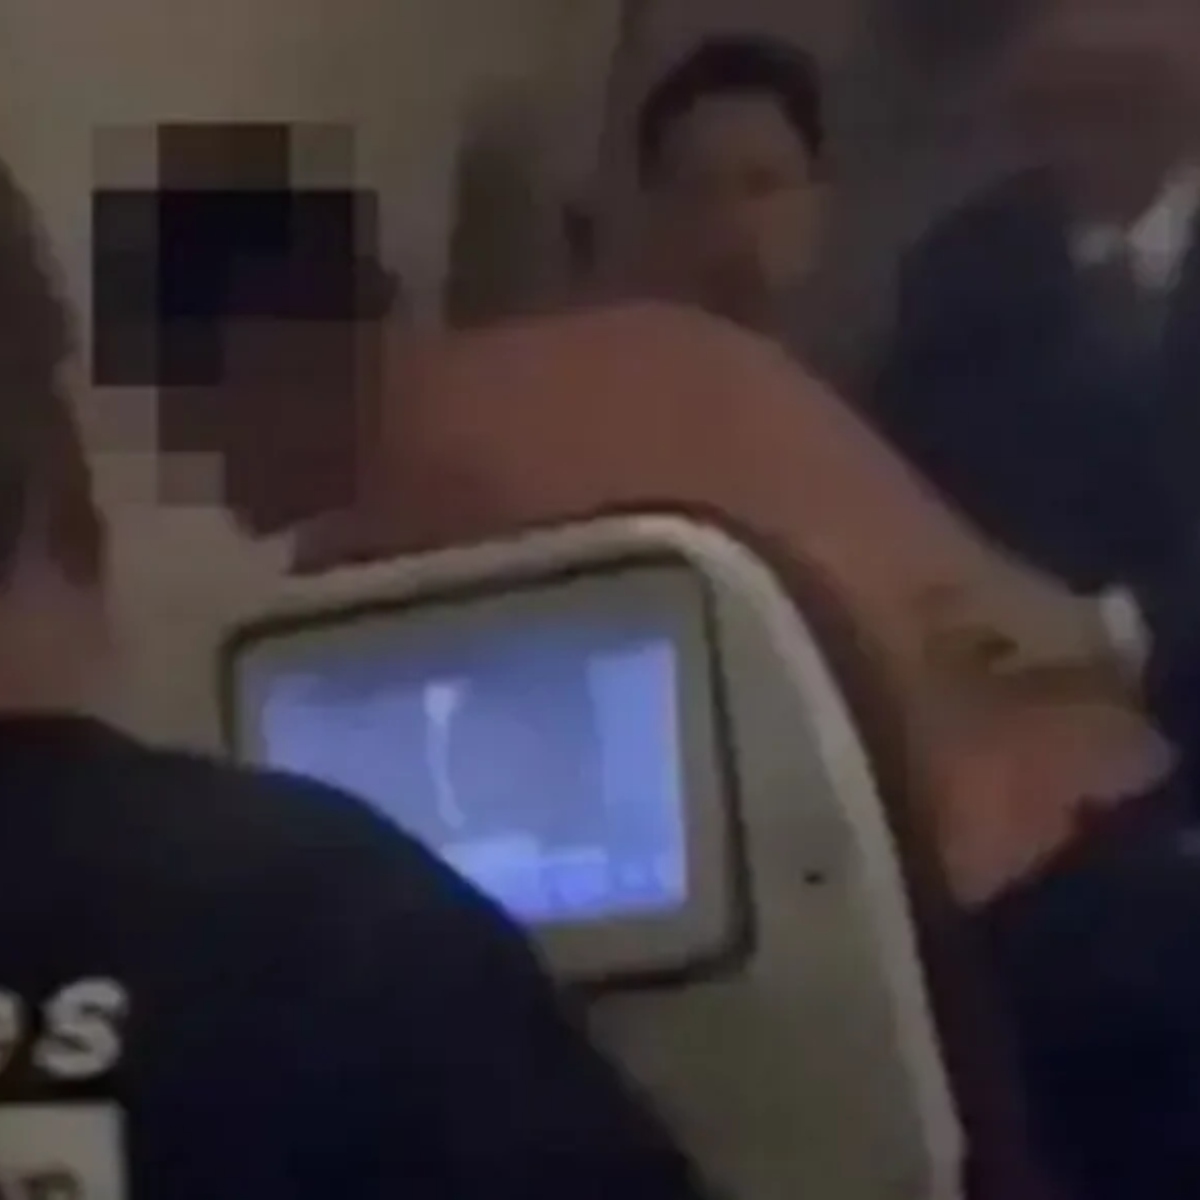  Passageiro espanca comissário, destrói banheiro de avião e acaba preso 